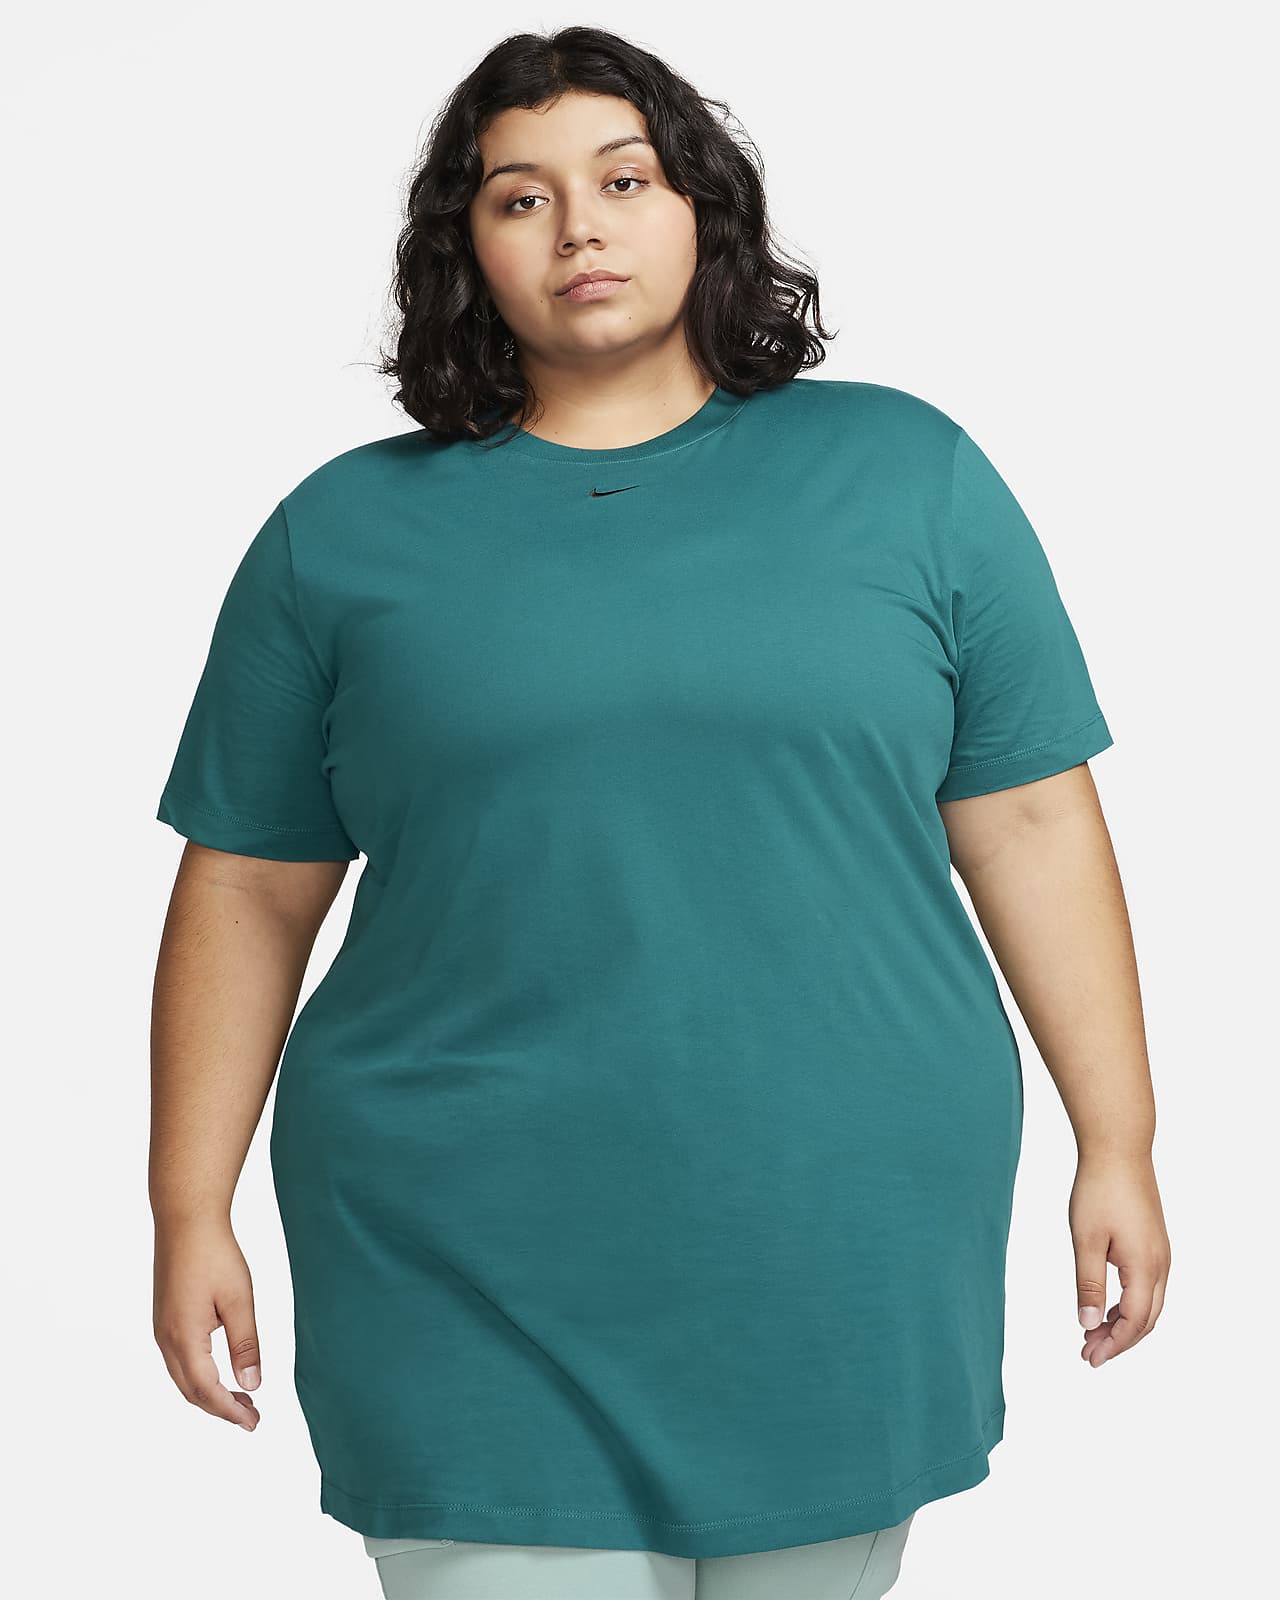 NIKE Women's Nike Sportswear Essential Short-Sleeve T-Shirt Dress